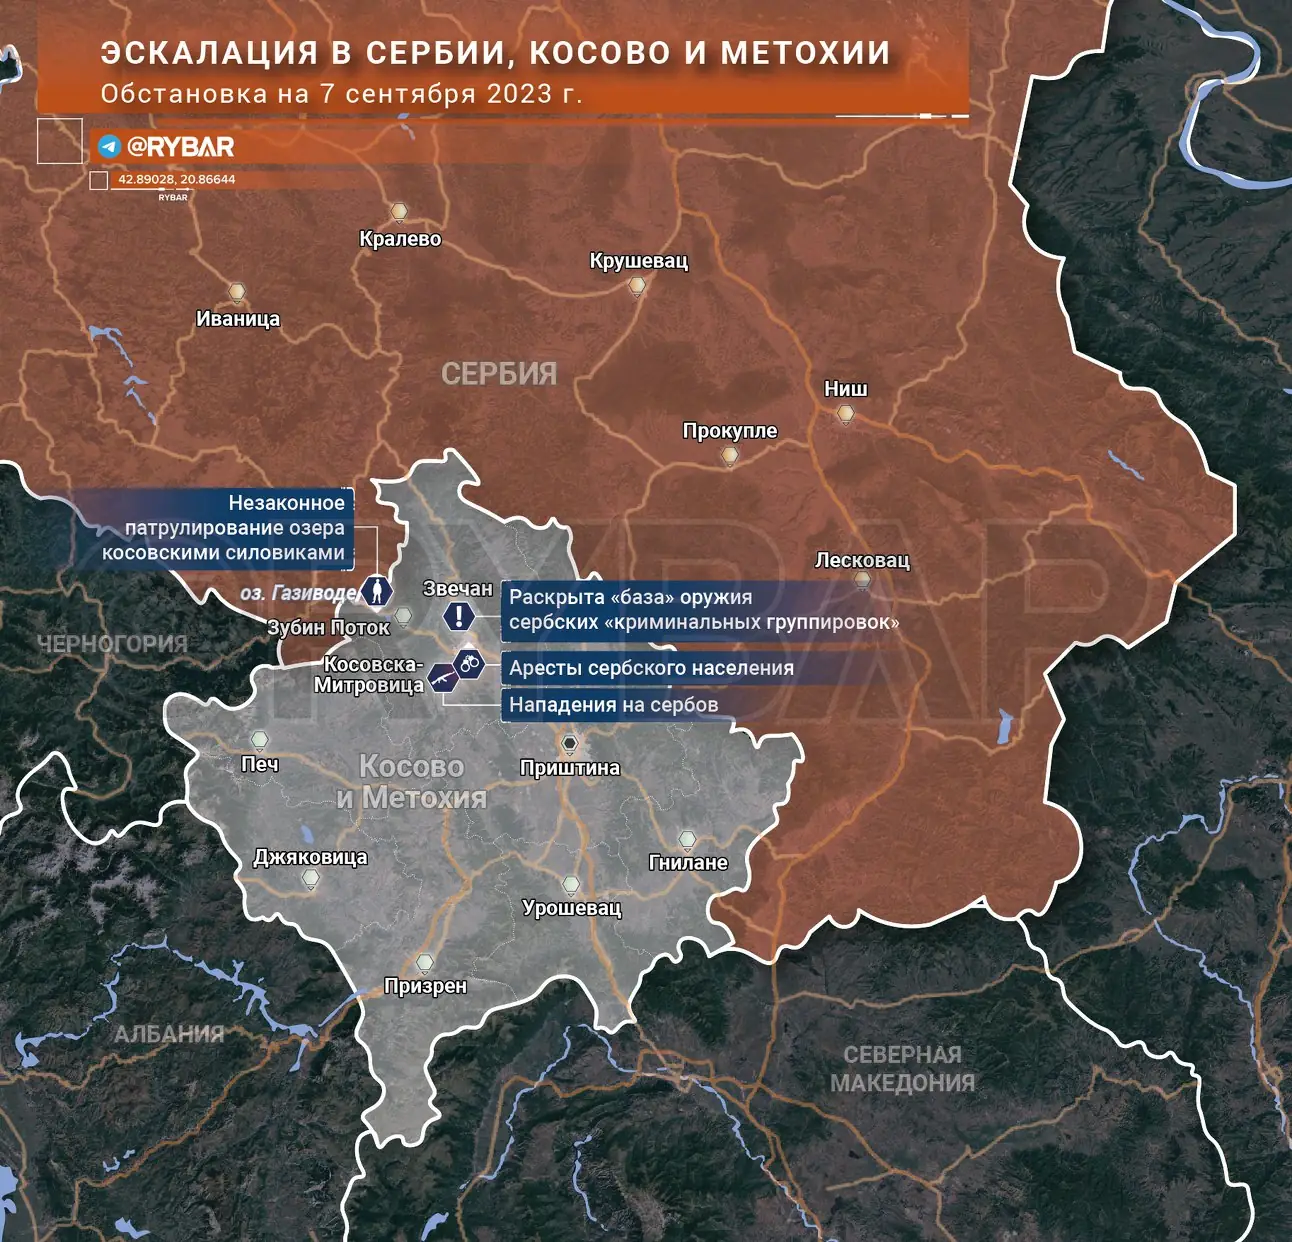 Обстановка в Сербии, Косово и Метохии на 7 сентября 2023 года